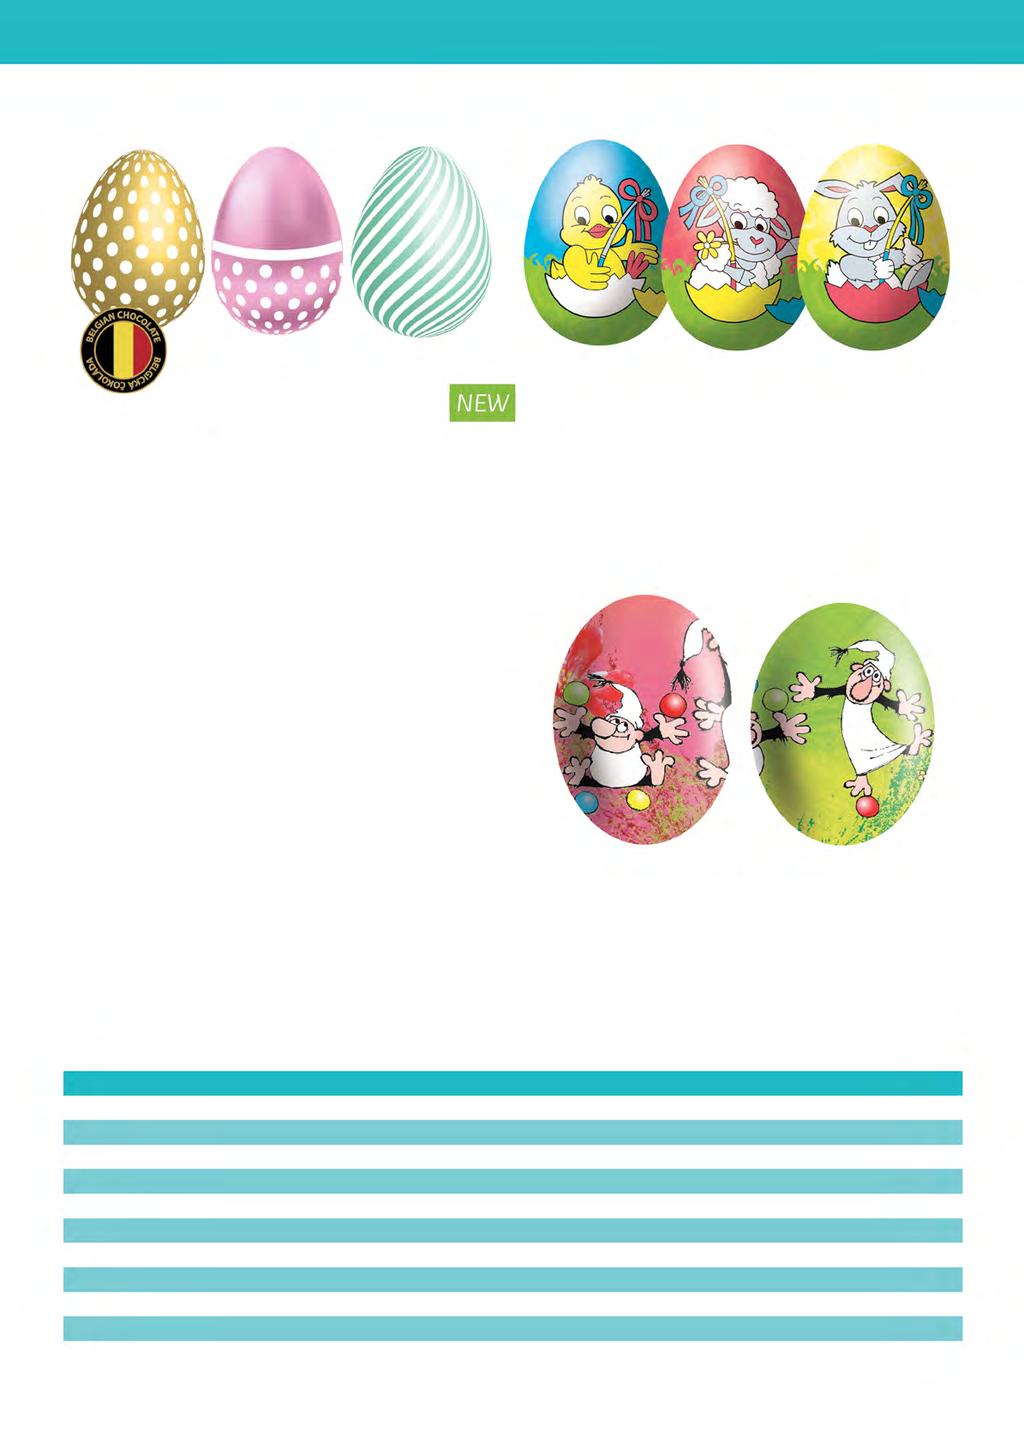 Velikonoční dutá vajíčka Neonové Vejce mix 3 motivy g belgická čokoláda Art. 230 000 541 Vejce 35 g Art.